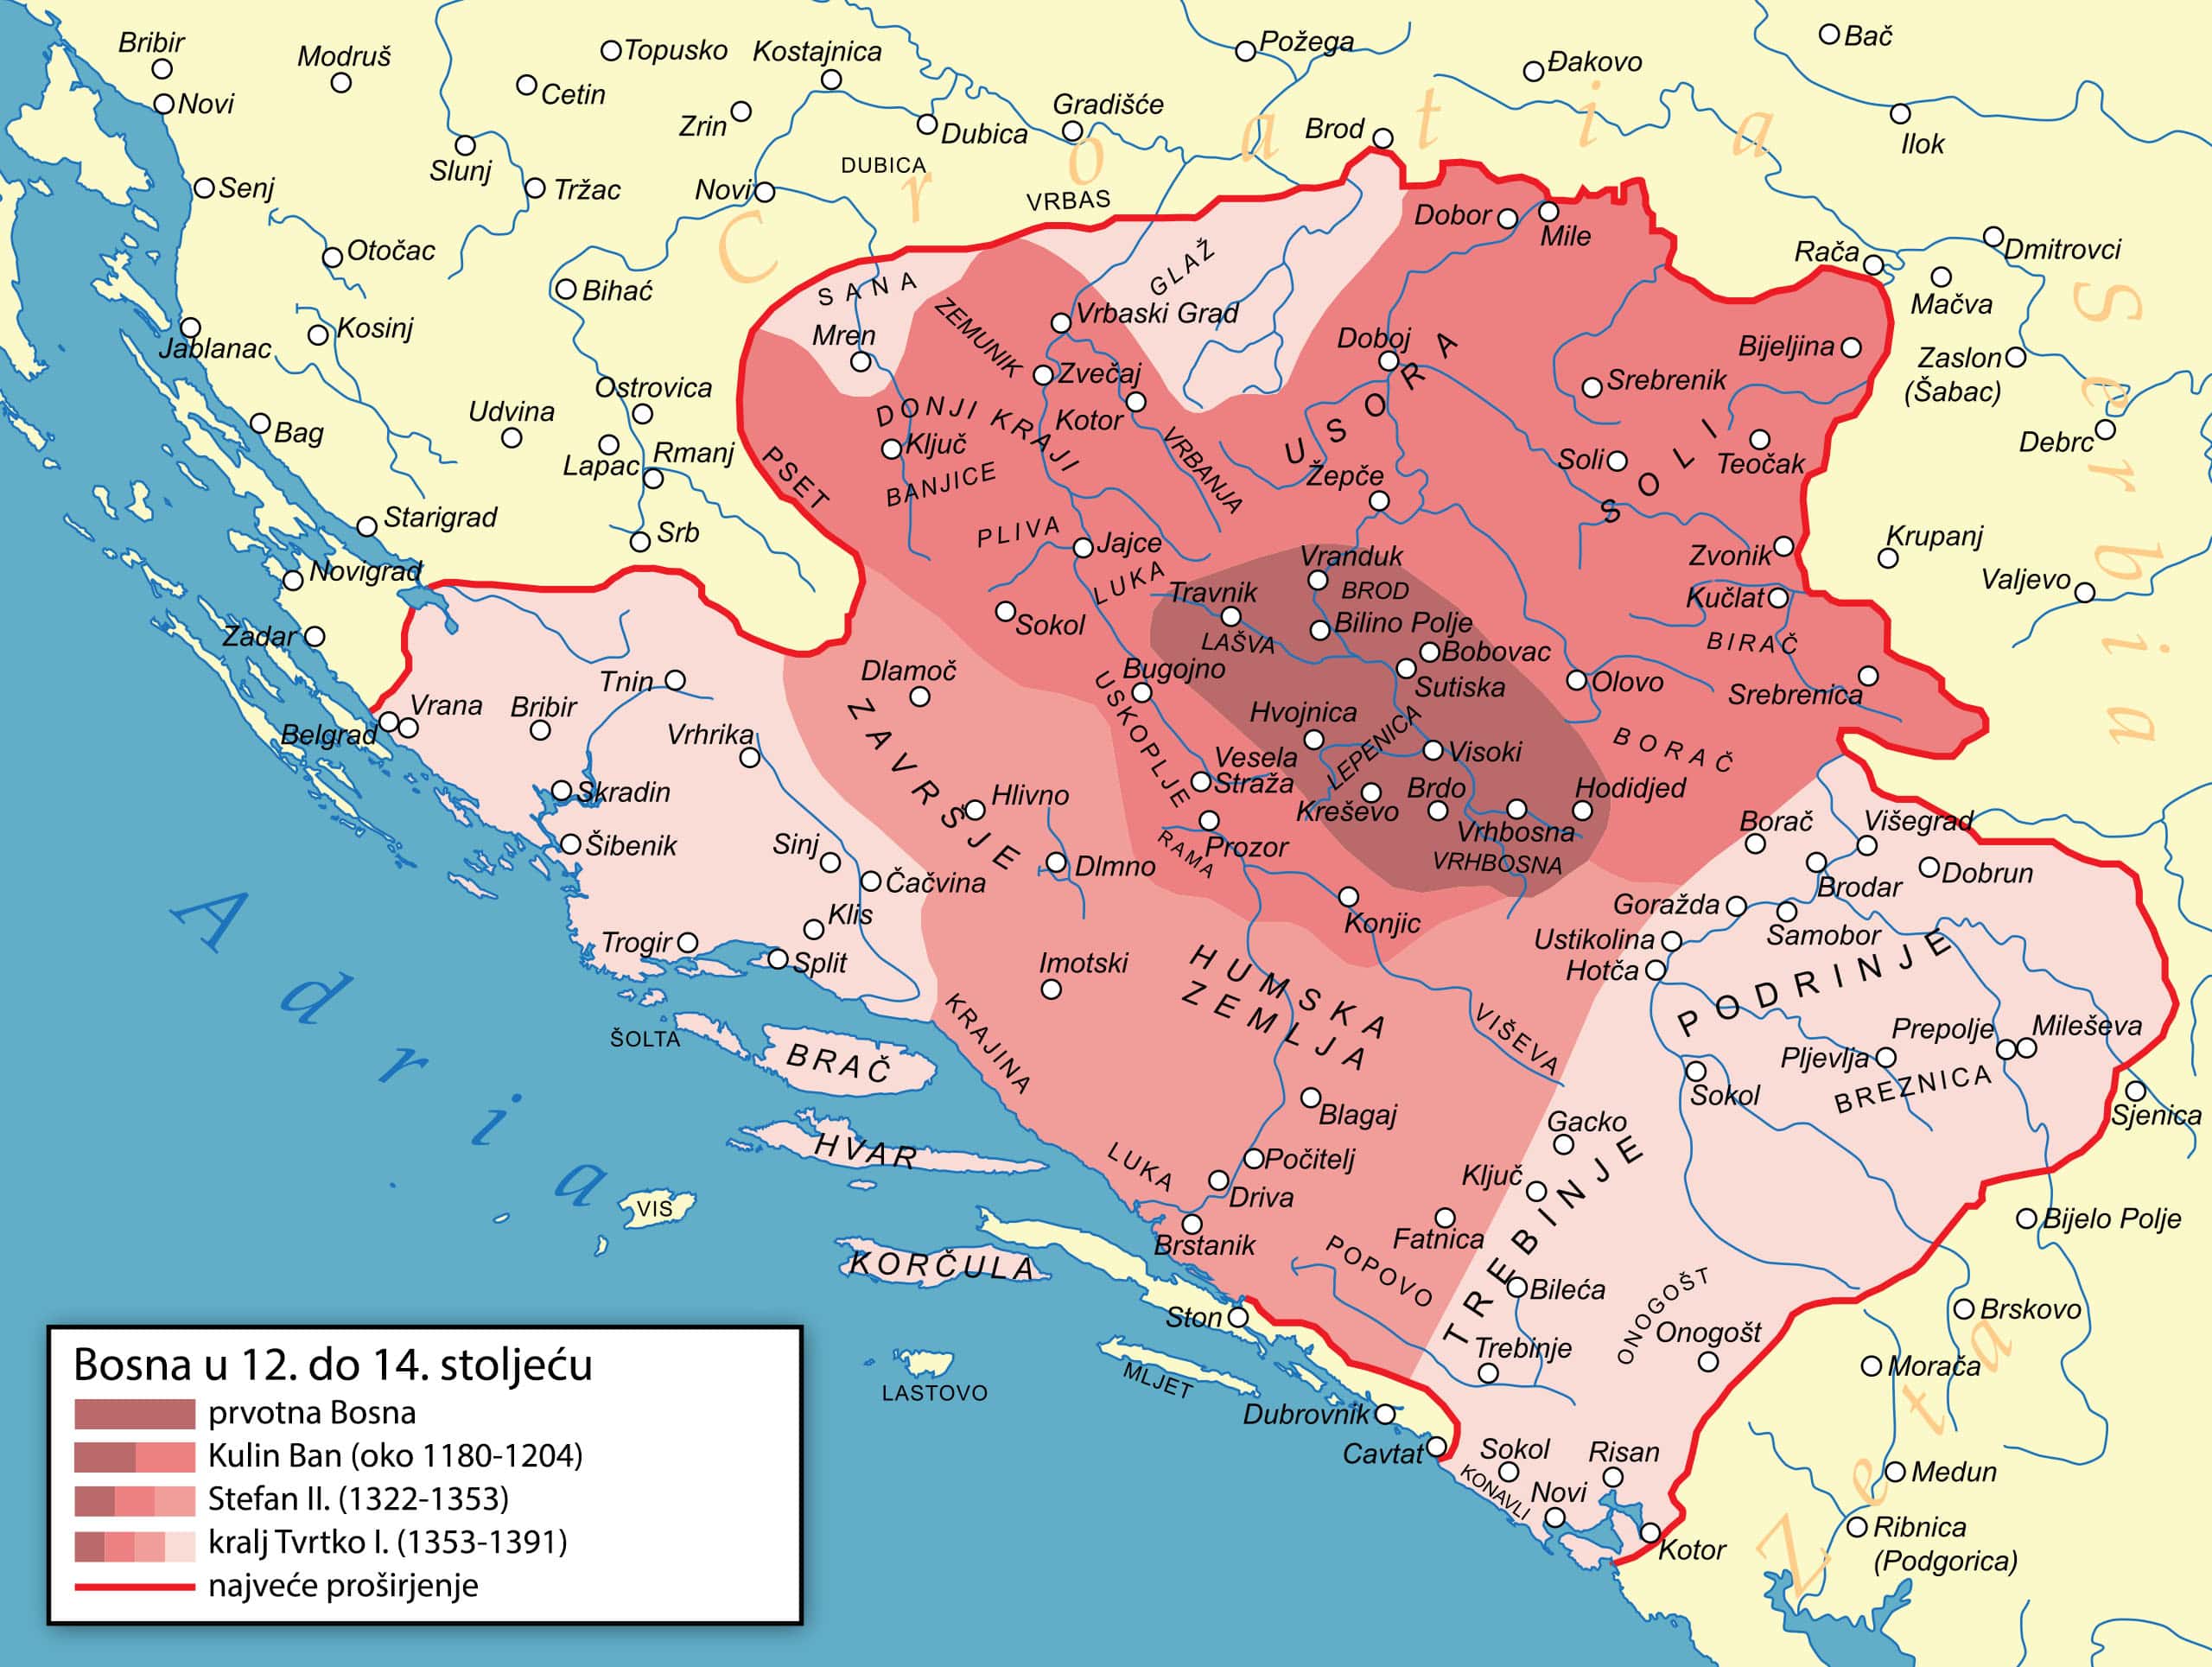 Širenje bosanskog kraljevstva od 12. do 14. veka, s Humom – "Humskom zemljom" – u sredini i susednom Zetskom kneževinom dole desno